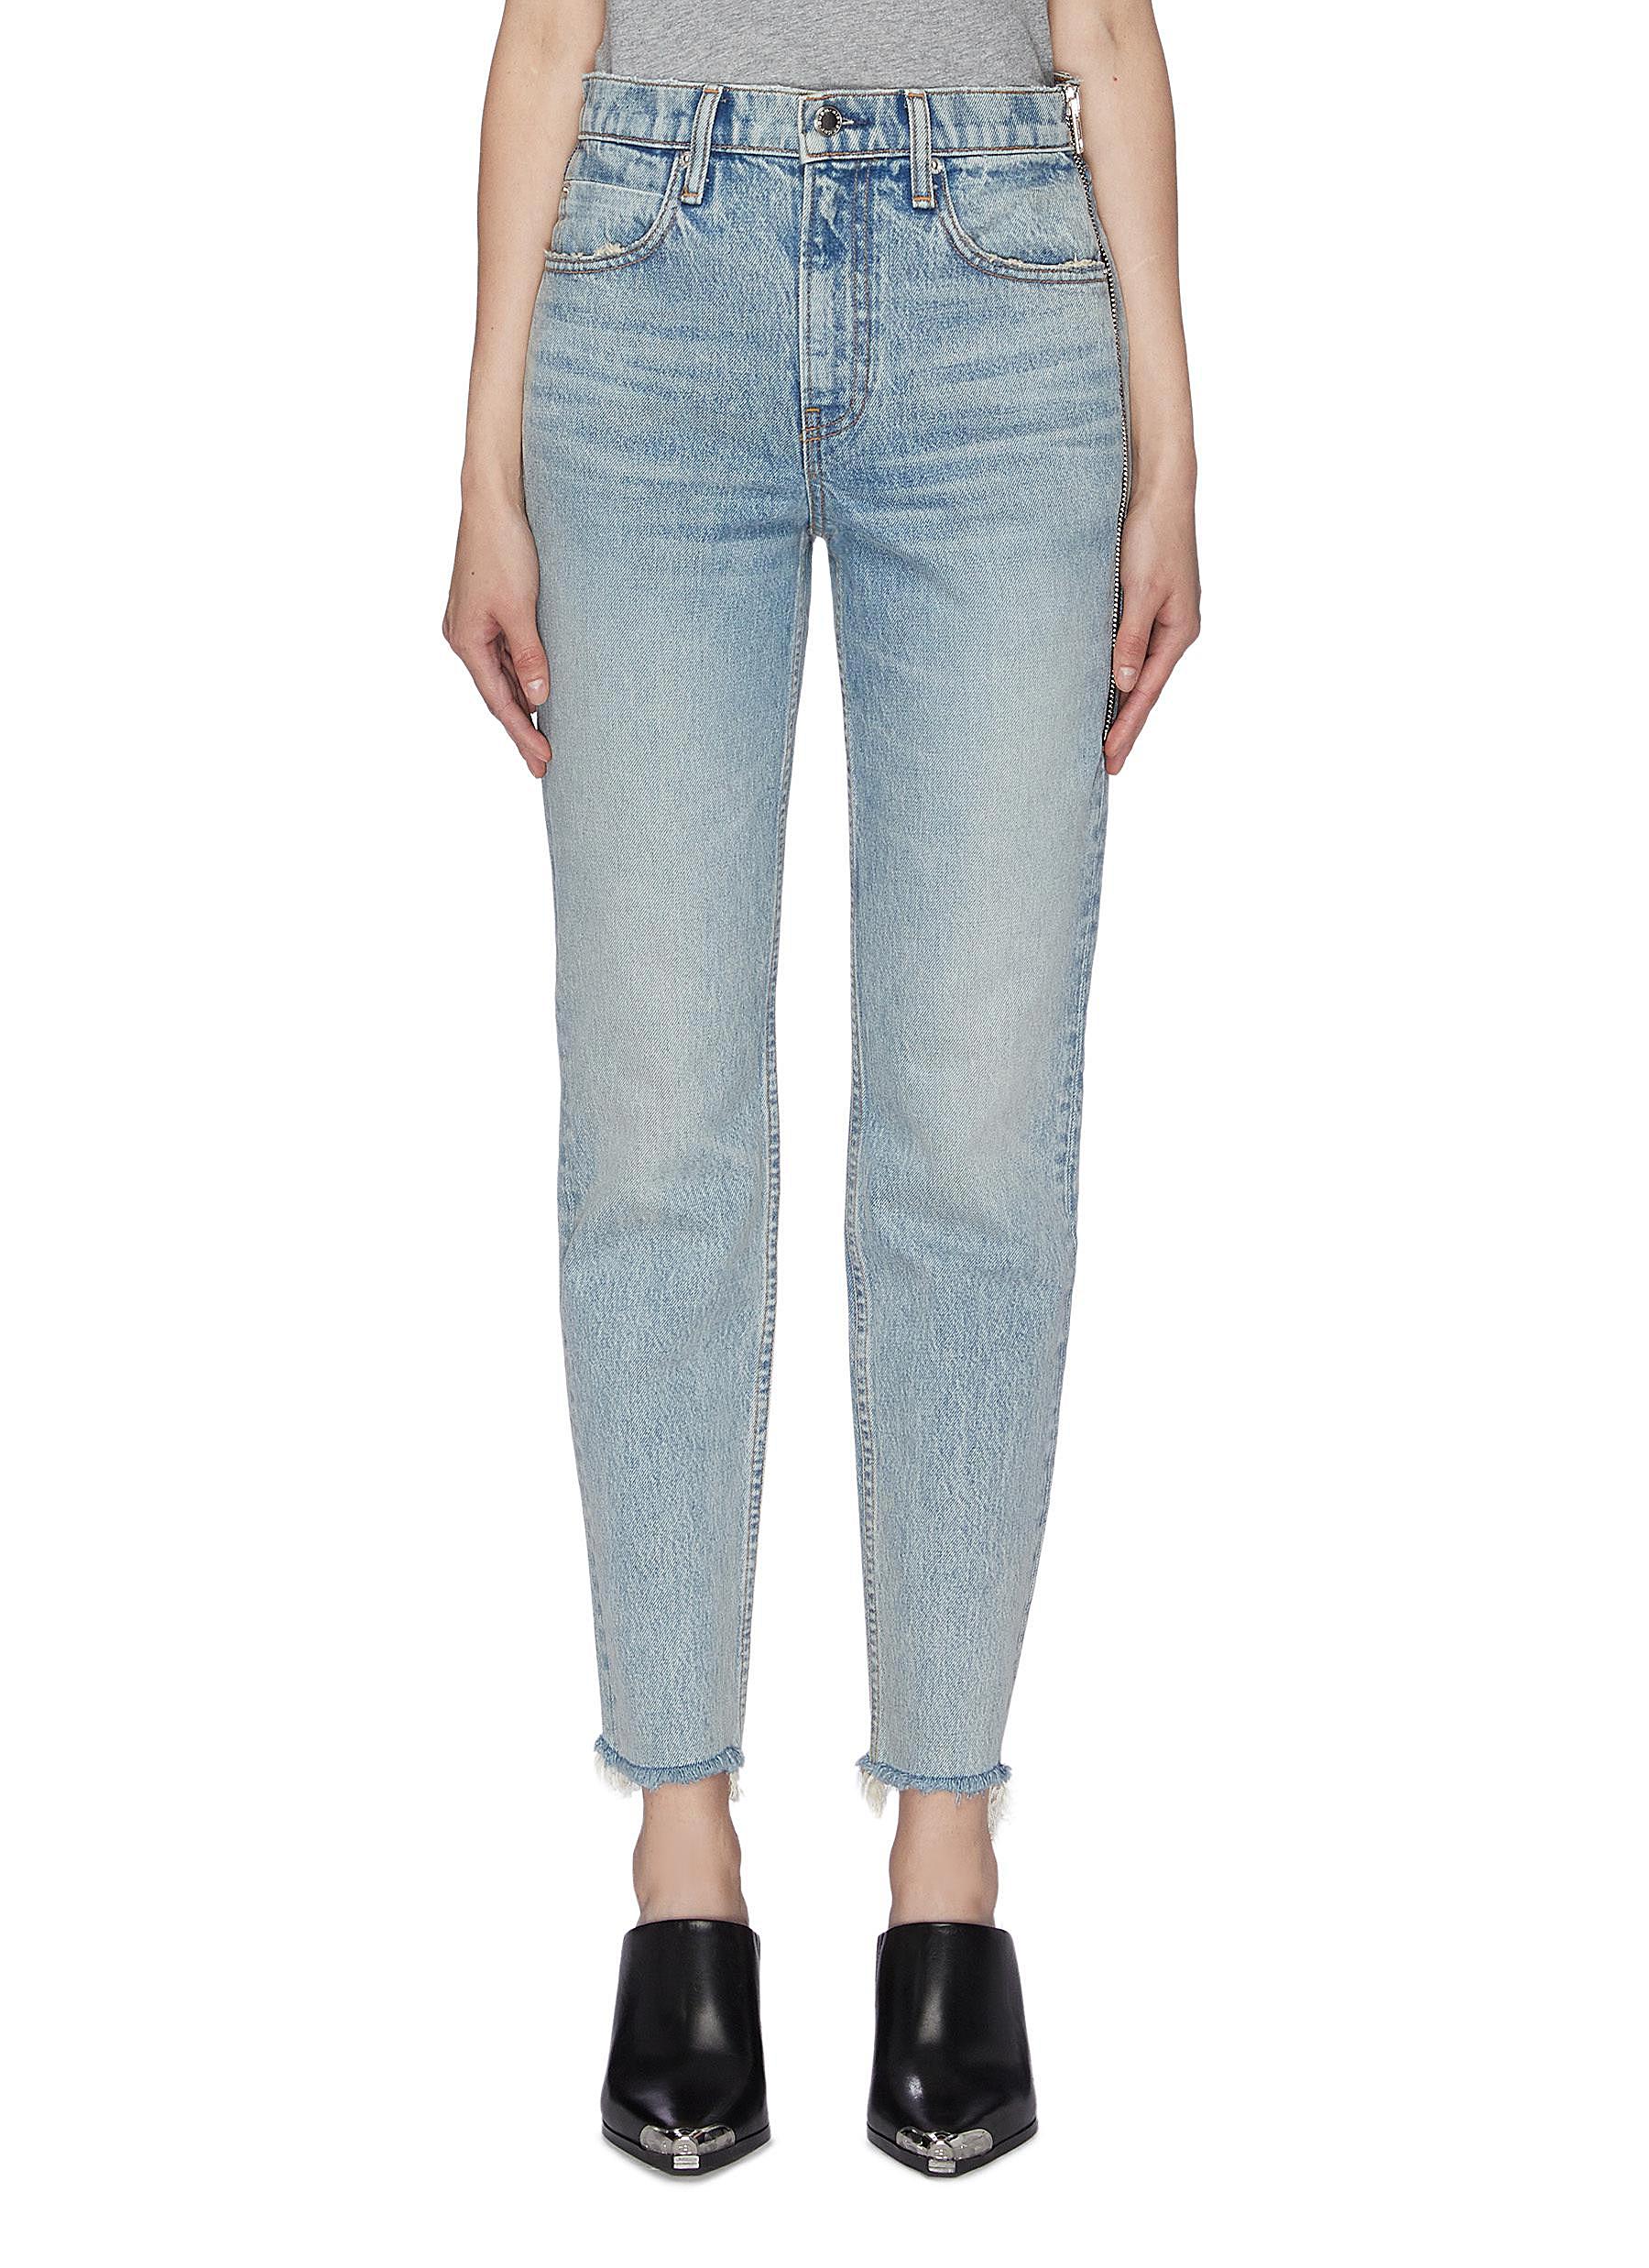 Cult zip side jeans by Alexanderwang